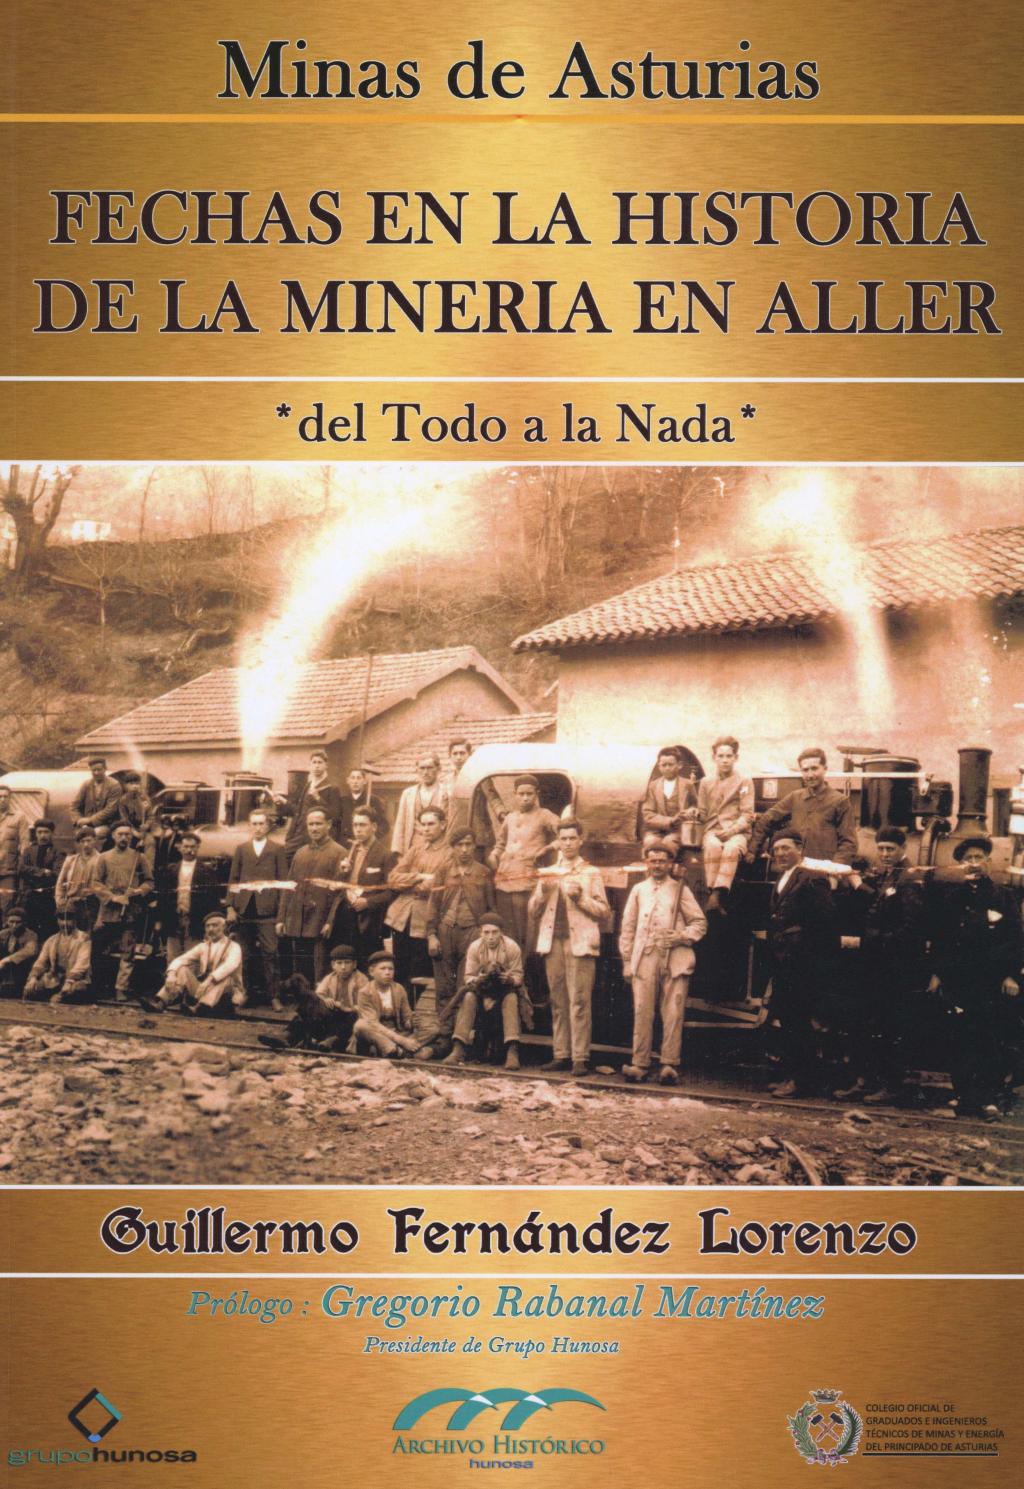 Colaboraciones Fechas en la historia de la minería en Aller Archivo Histórico Hunosa Pozo Fondón